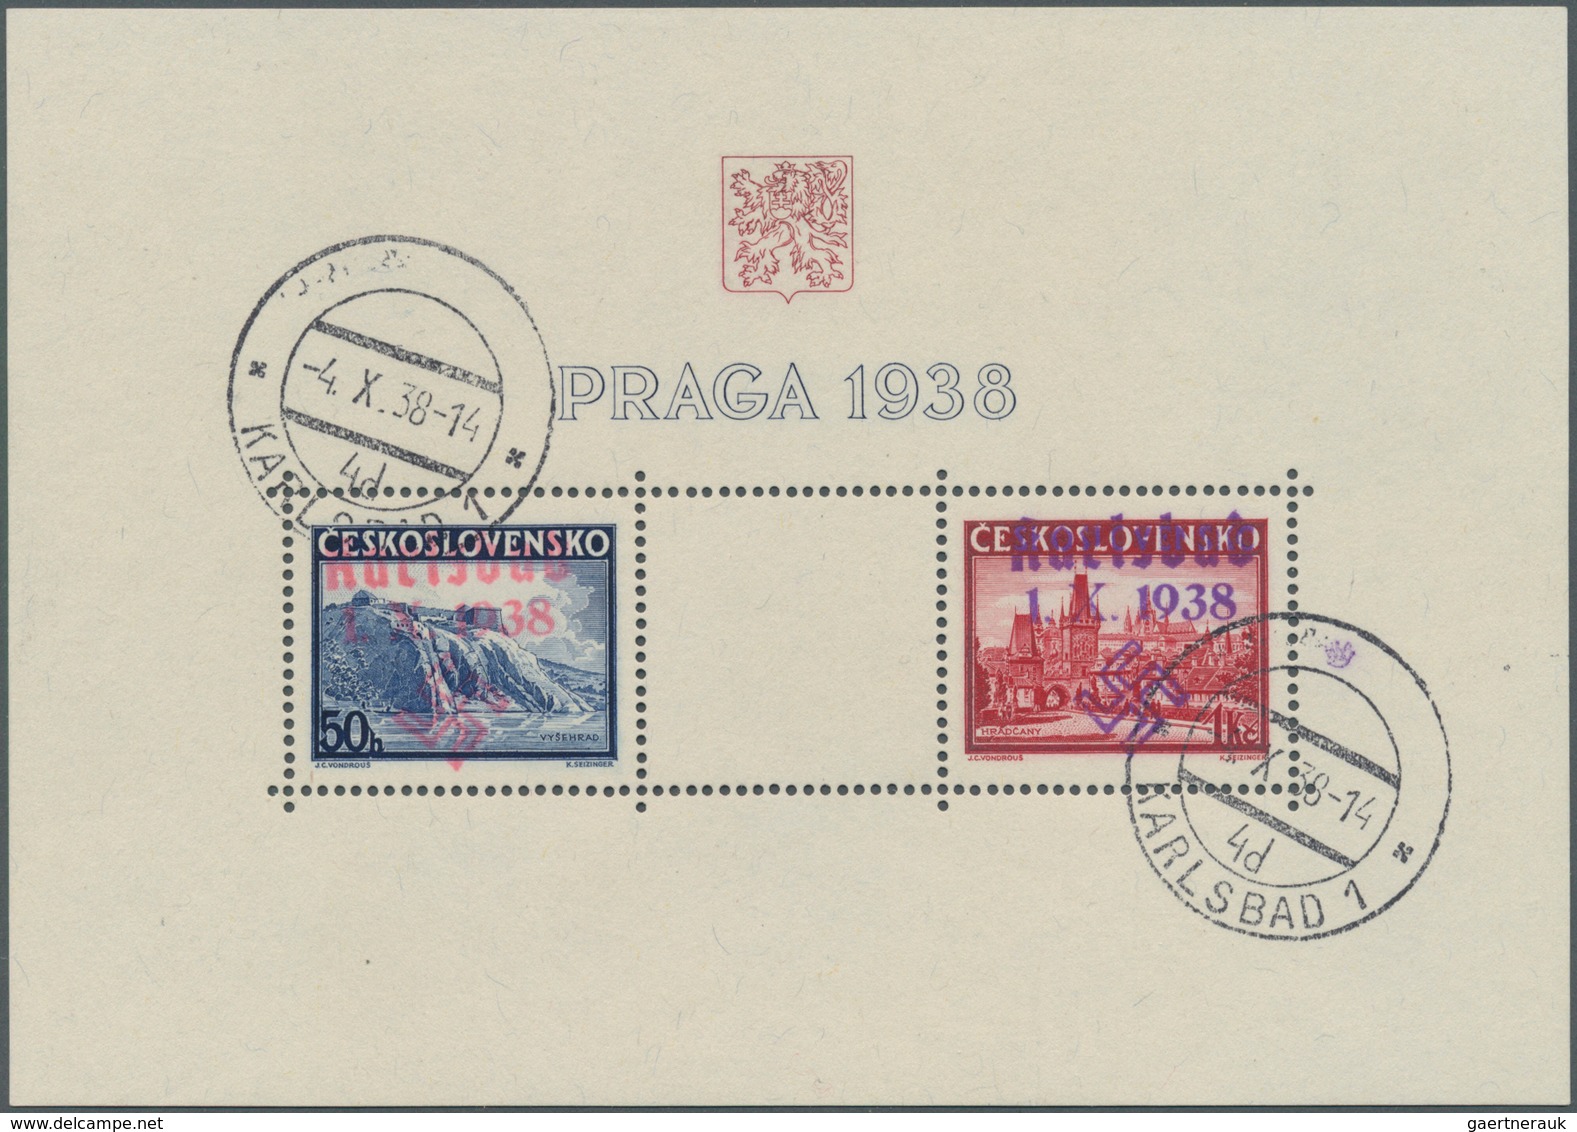 Sudetenland - Karlsbad: Blockausgabe "Briefmarkenausstellung PRAGA 1938", Mit Handstempelaufdruck "K - Sudetenland